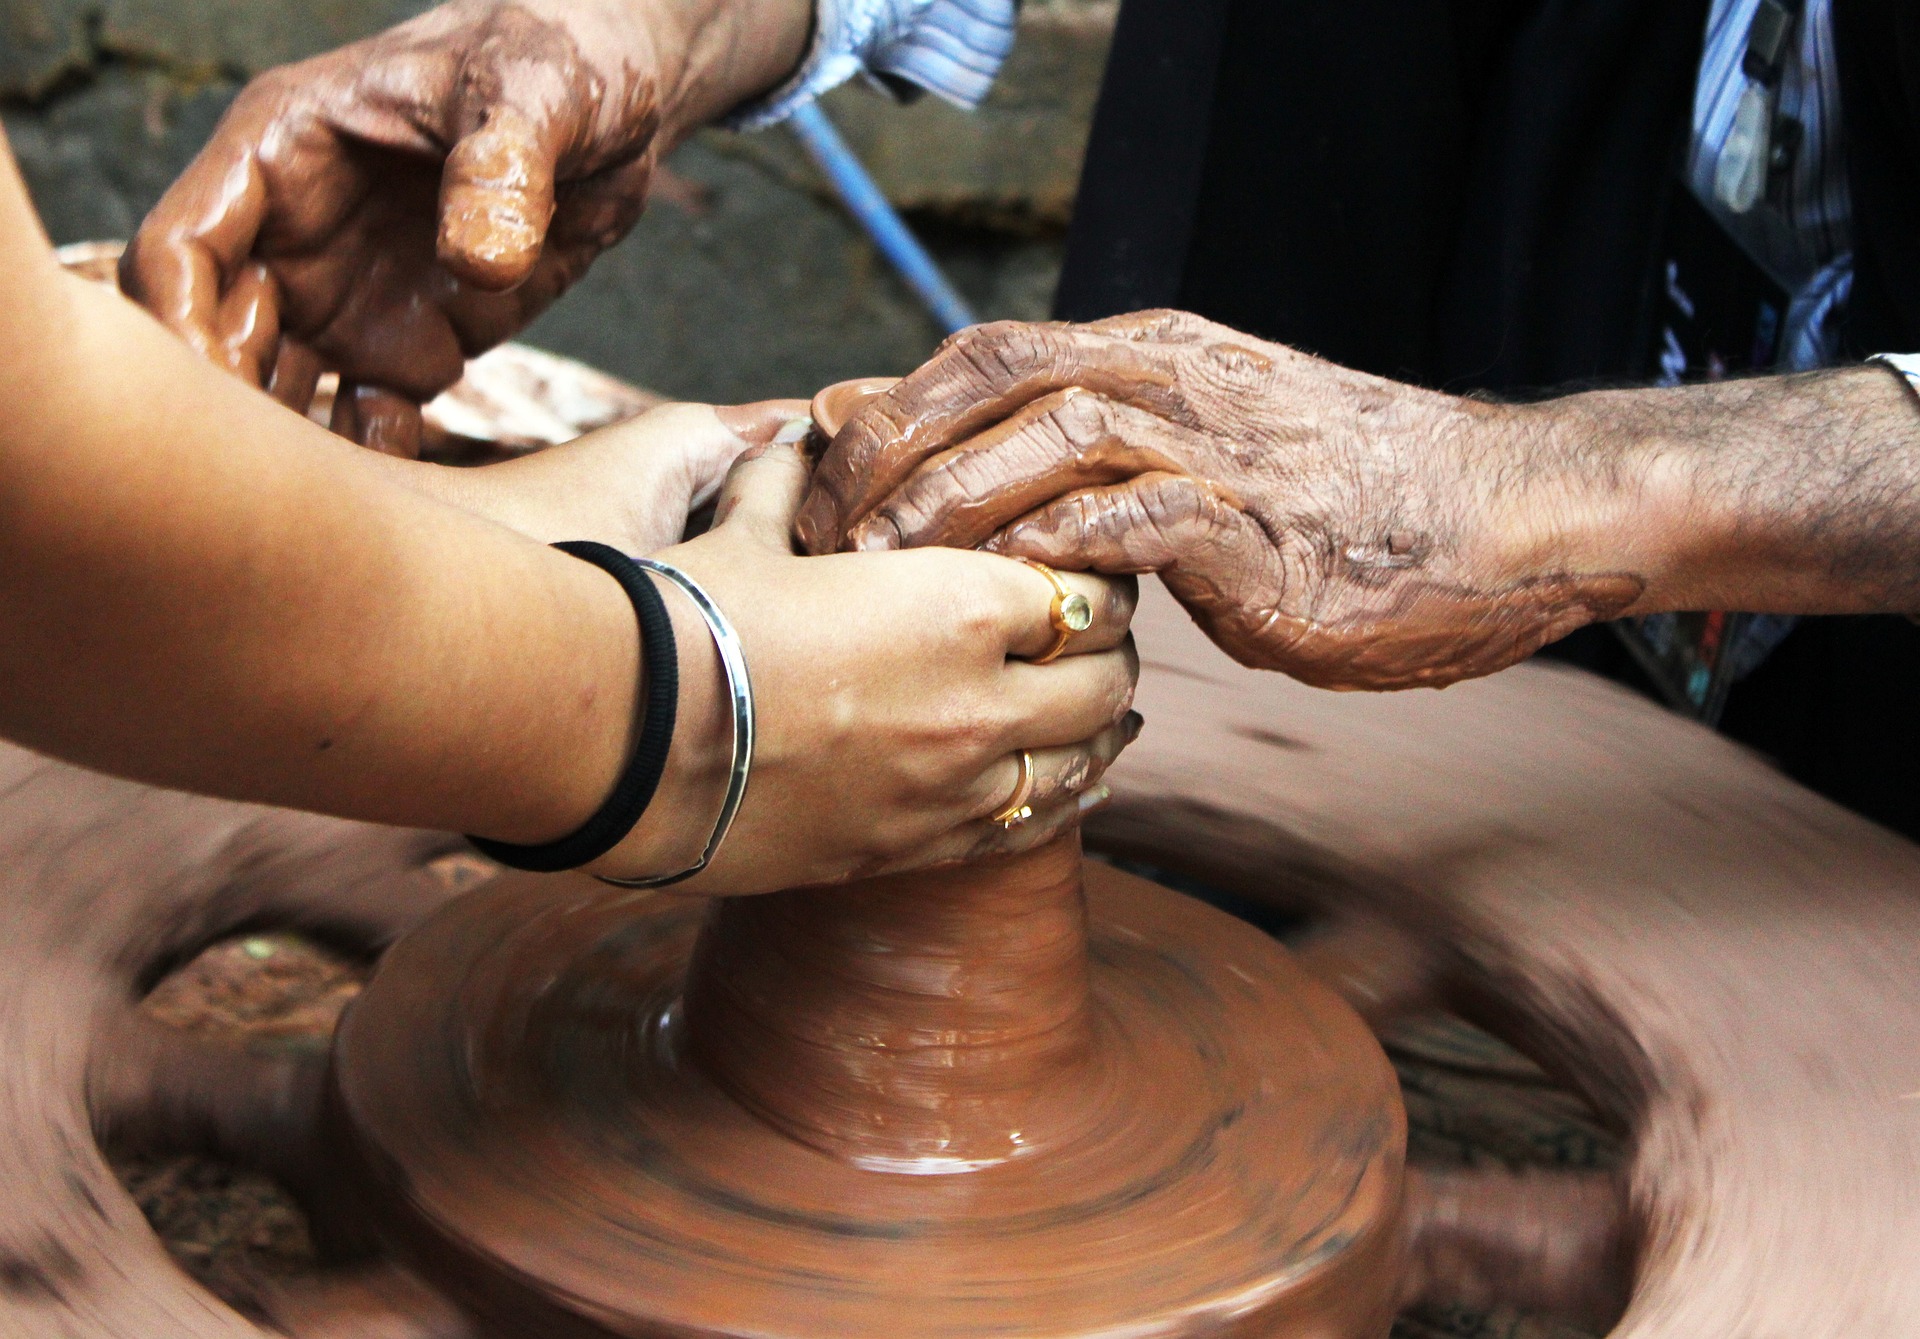 5 bonnes raisons de faire de la poterie en famille